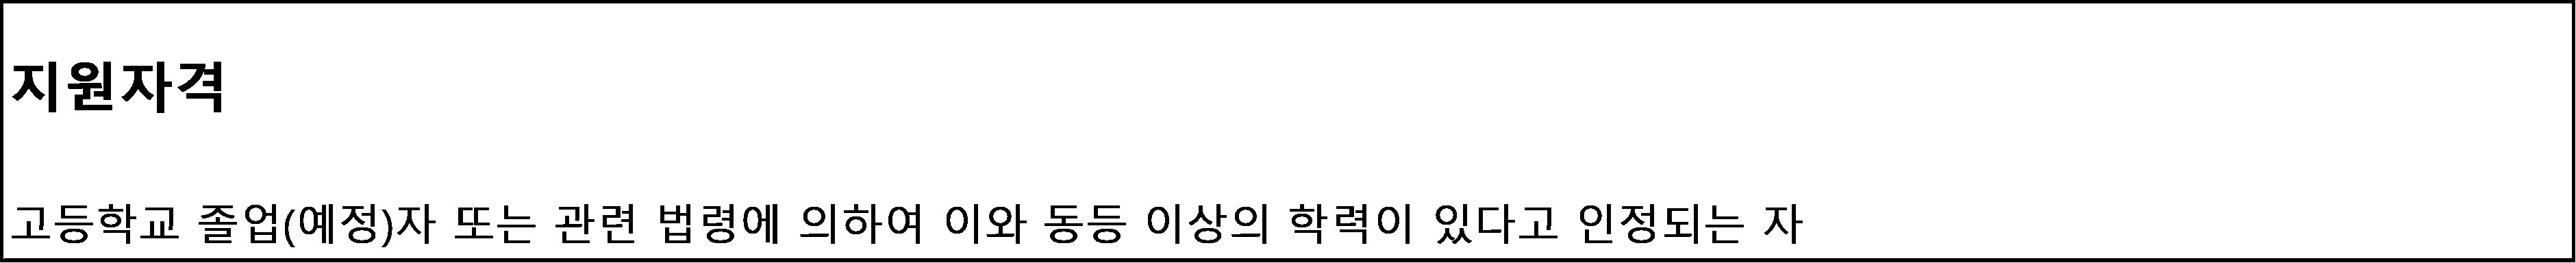 서강대학교 수시 모집